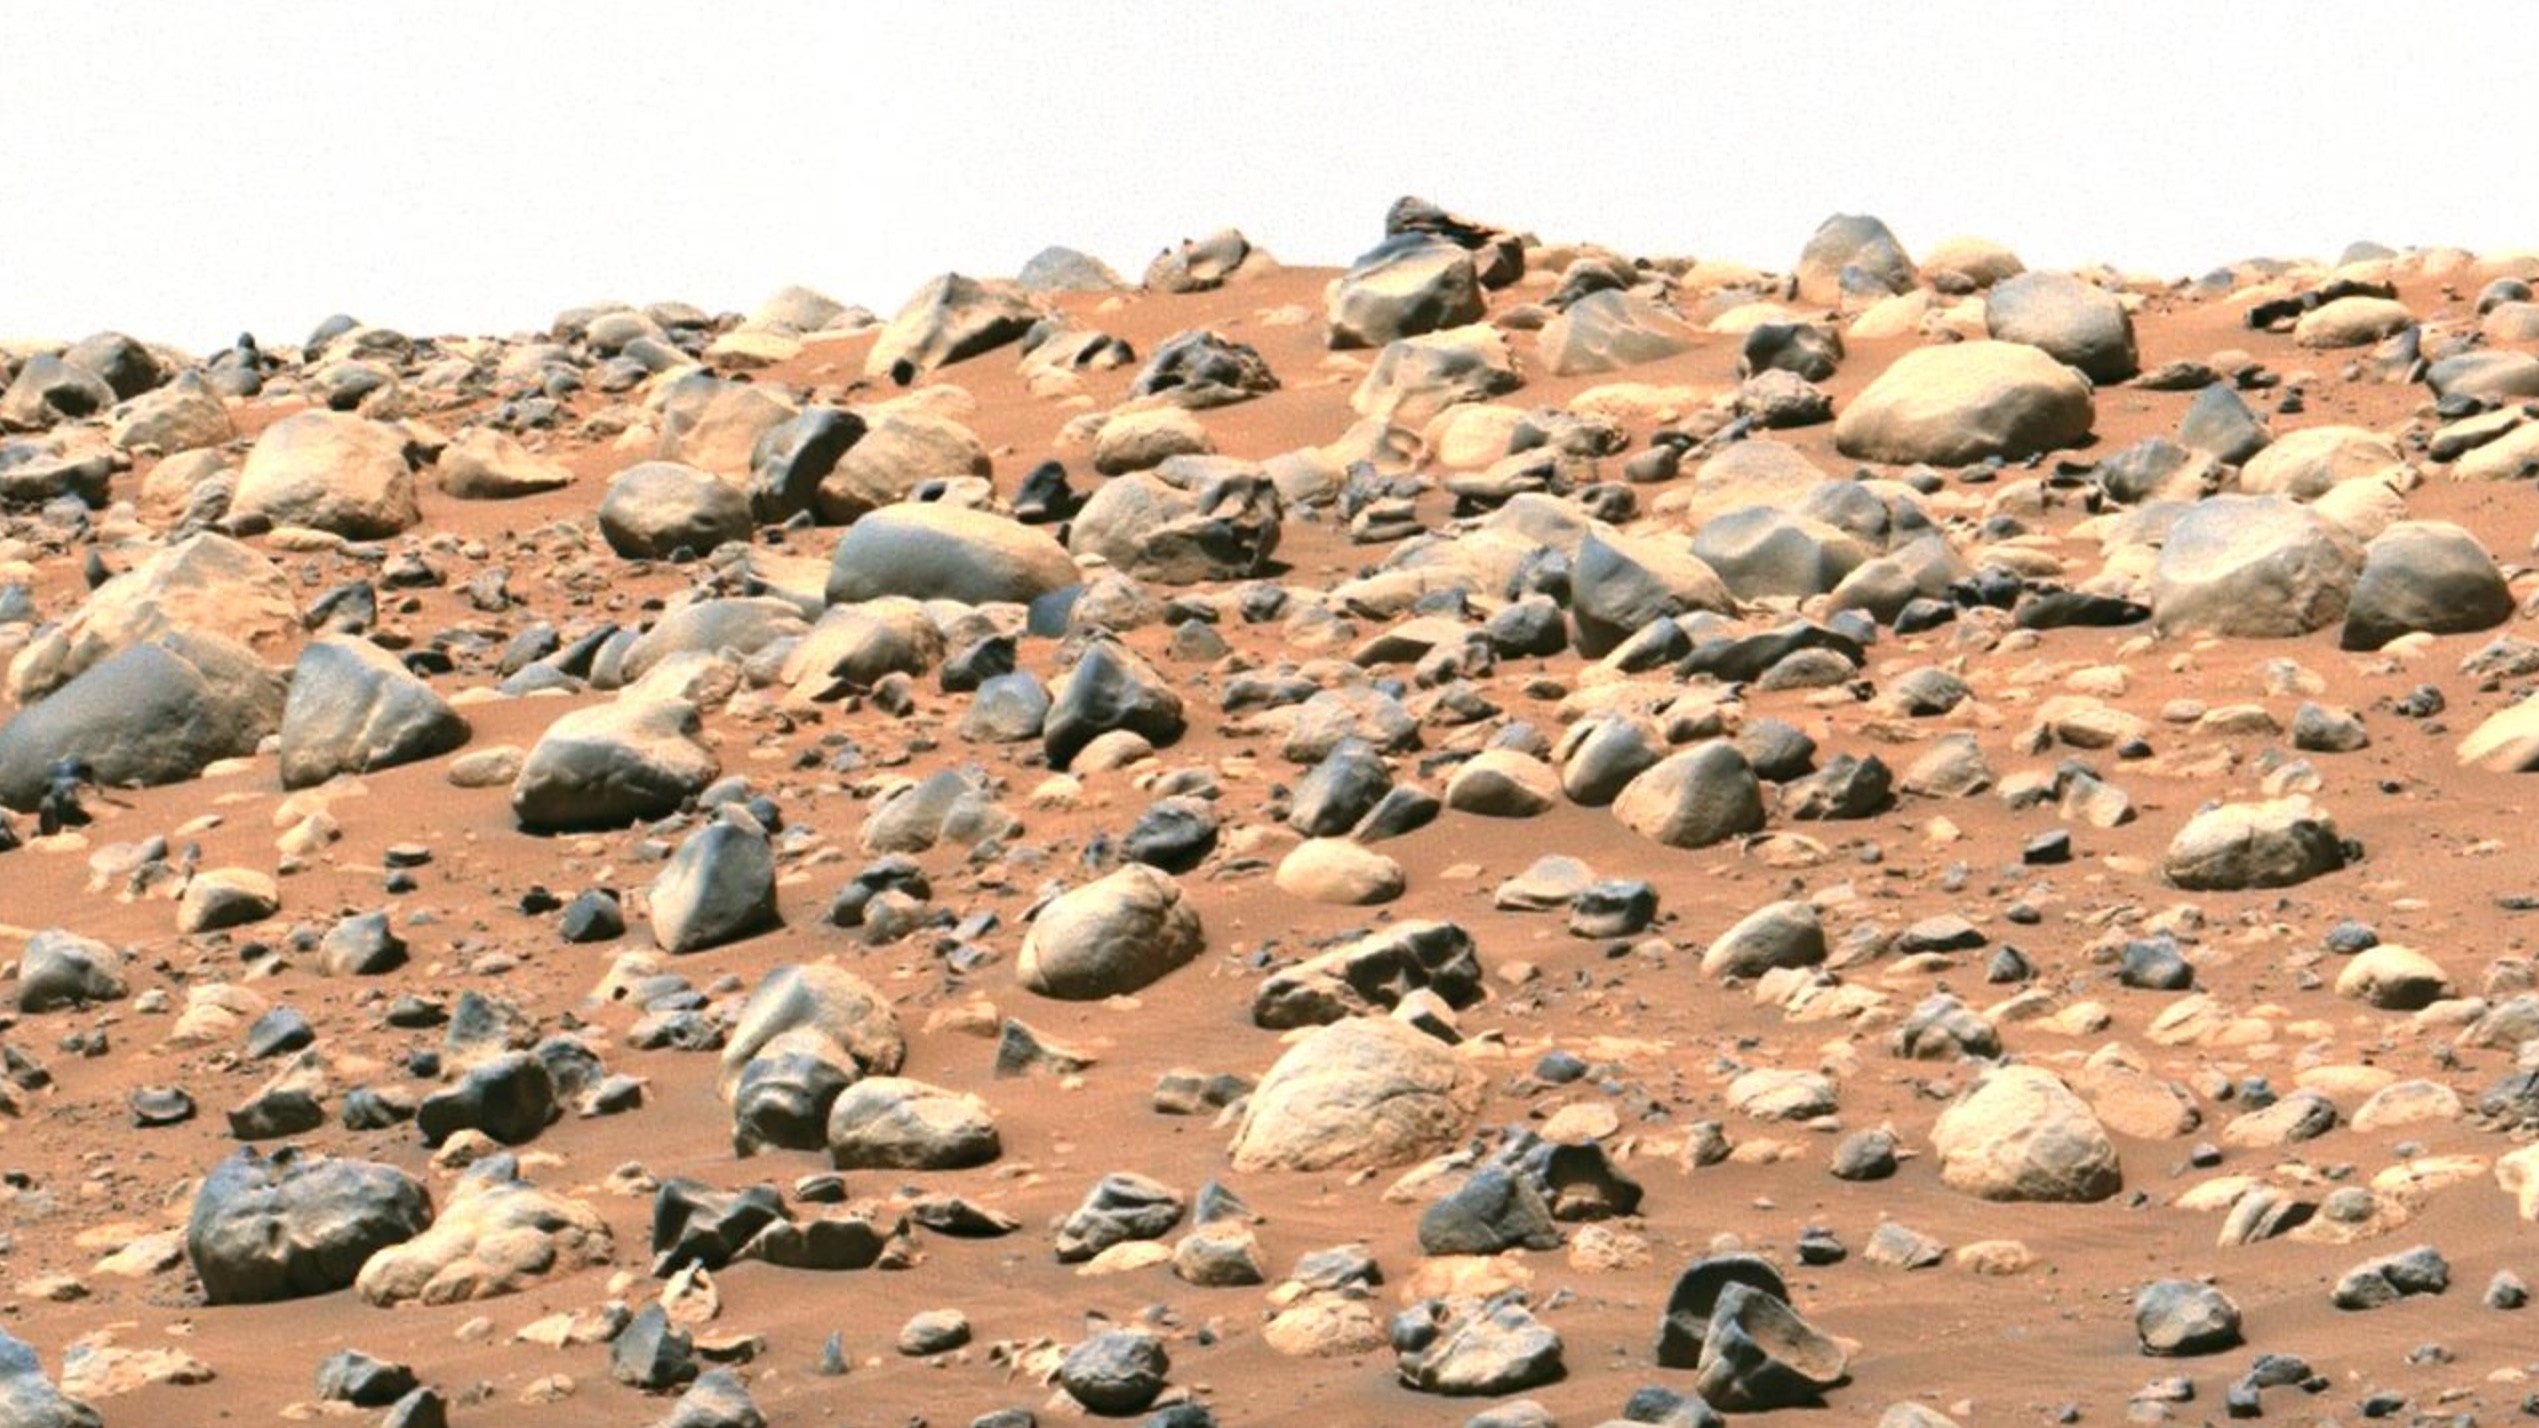 Un morceau de terre martienne rouge parsemée de gros rochers.